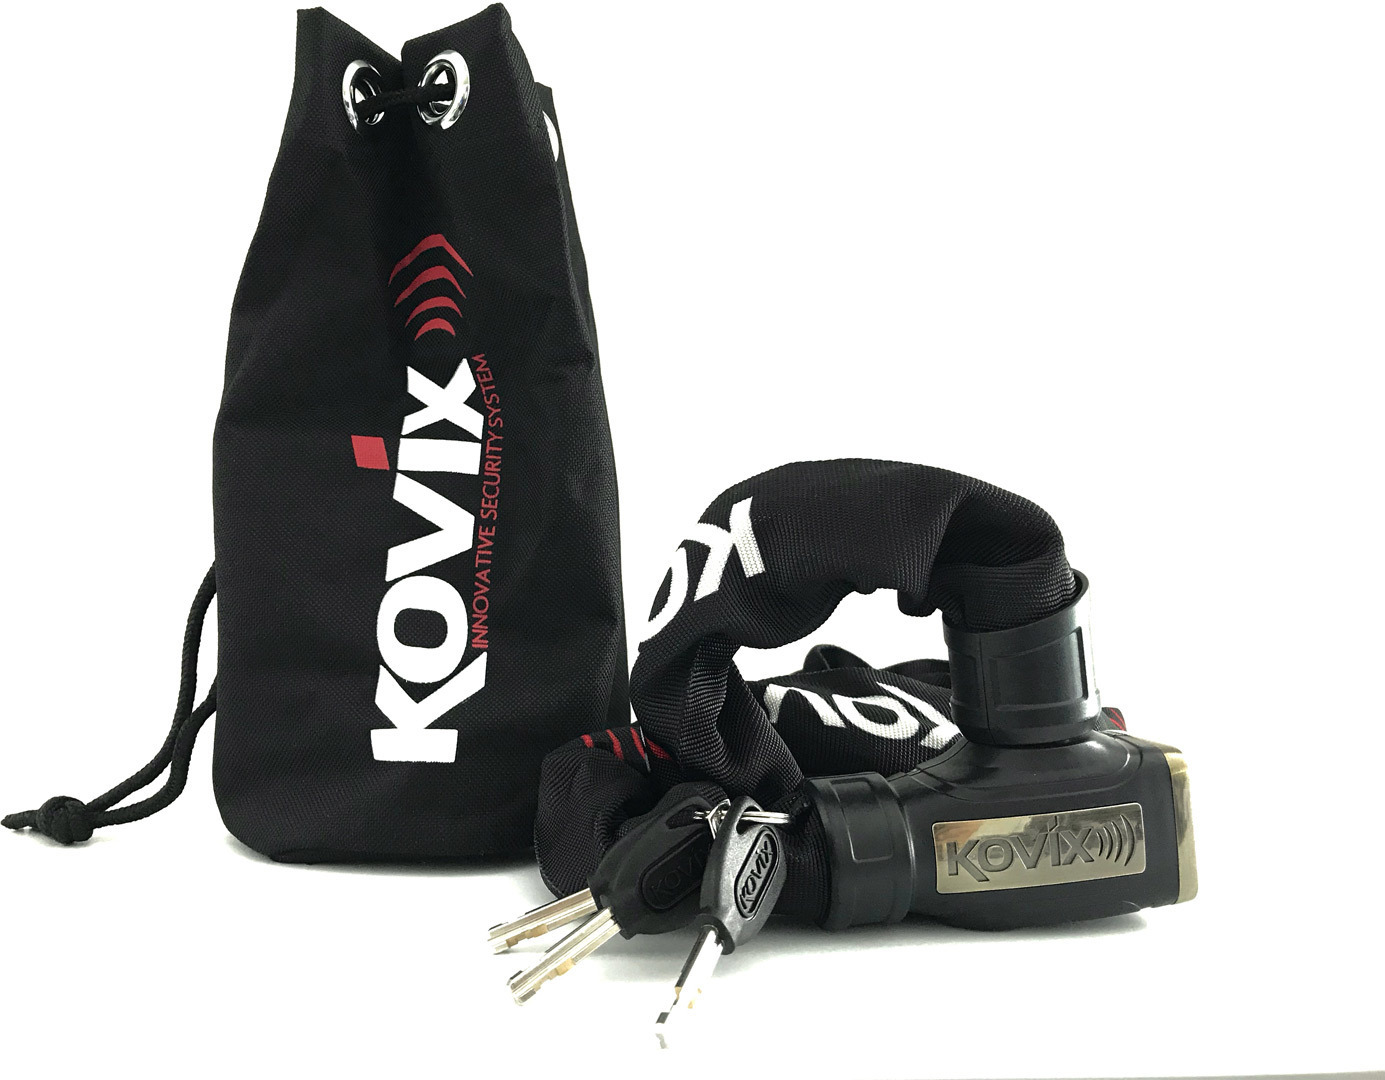 Kovix KCL8 Chain Lock, black, Size 120 cm, black, Size 120 cm